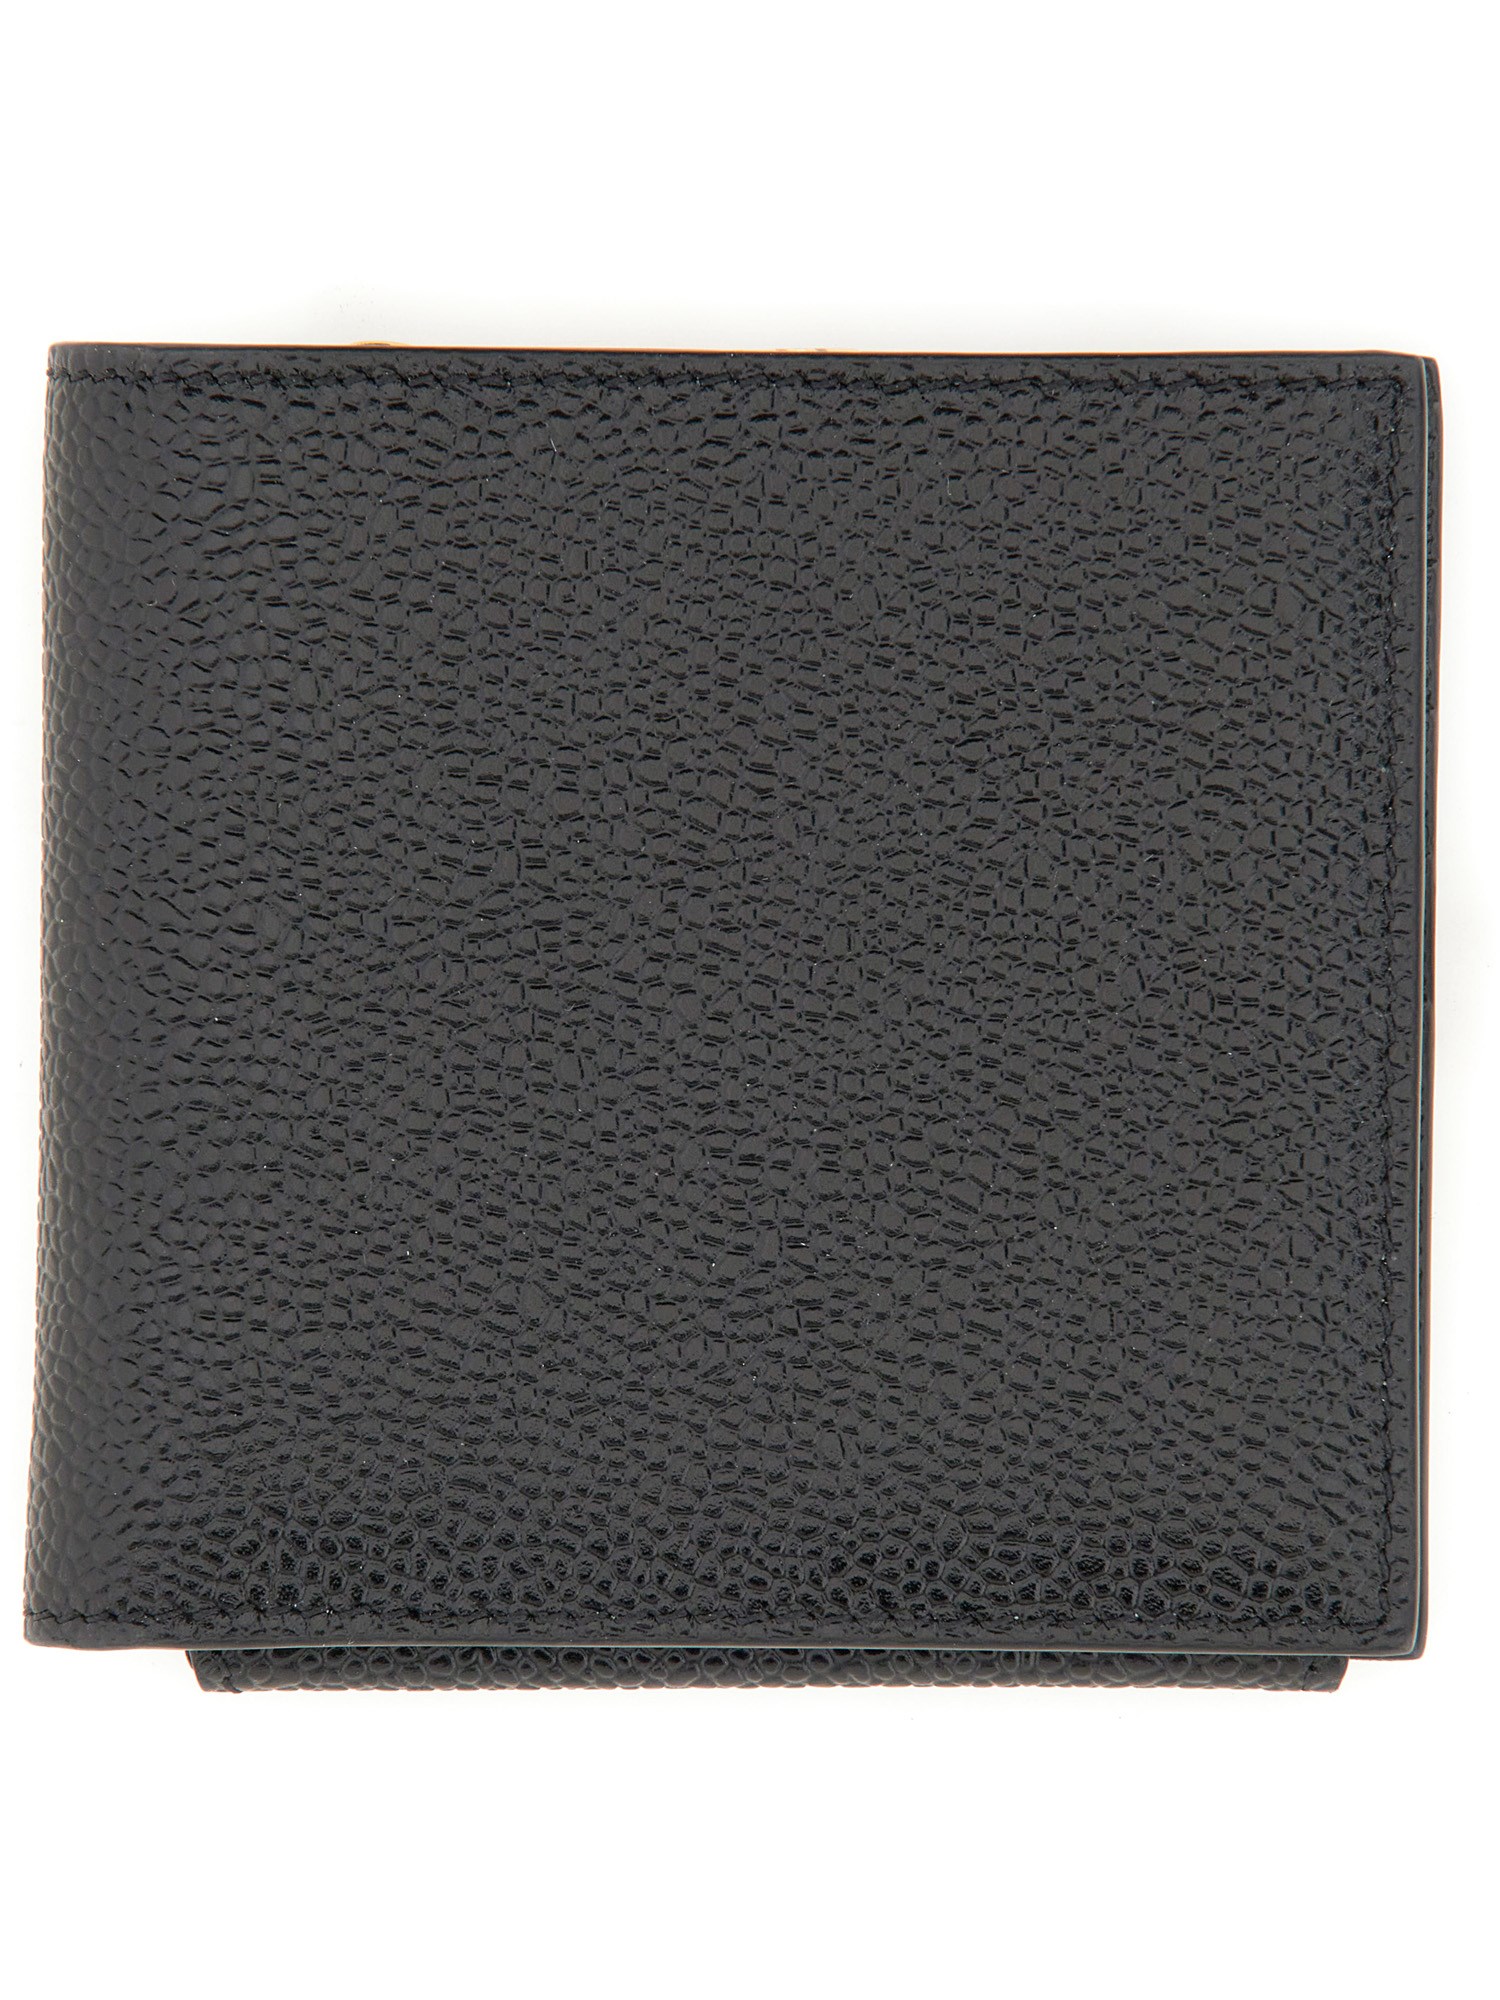 Thom Browne thom browne leather wallet